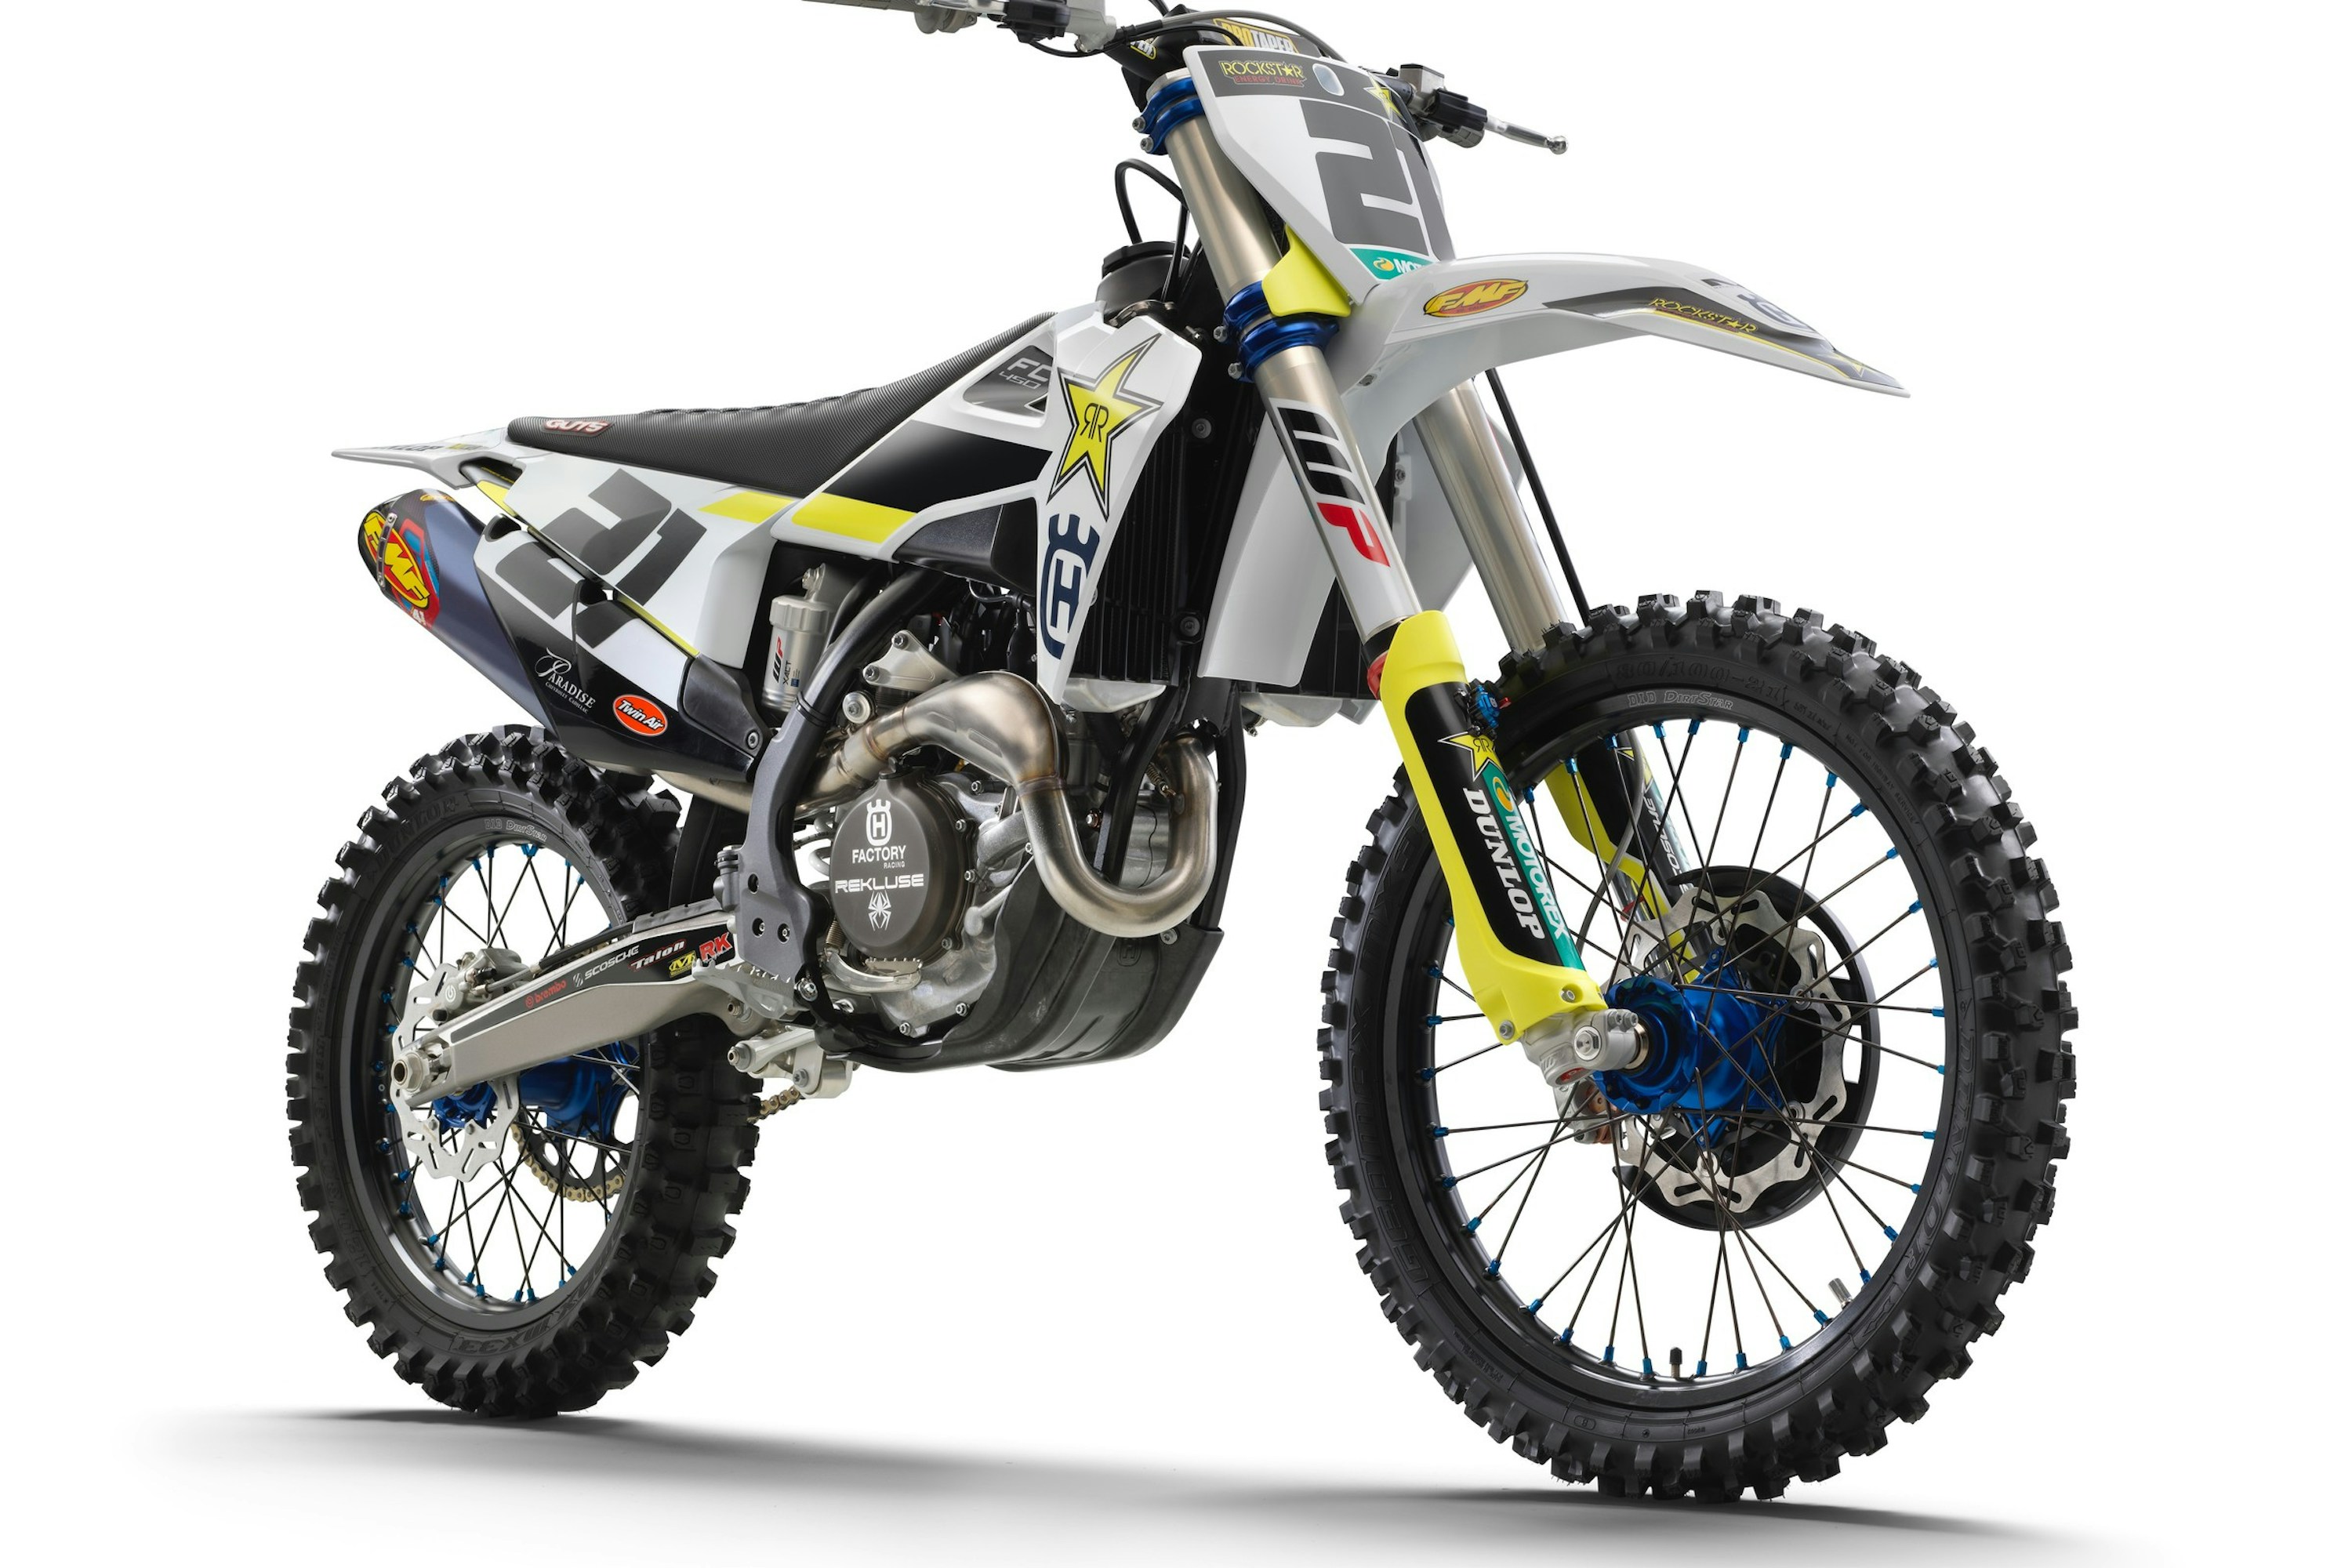 FMF Releases FMF Factory Motocross Bike Toy - Racer X